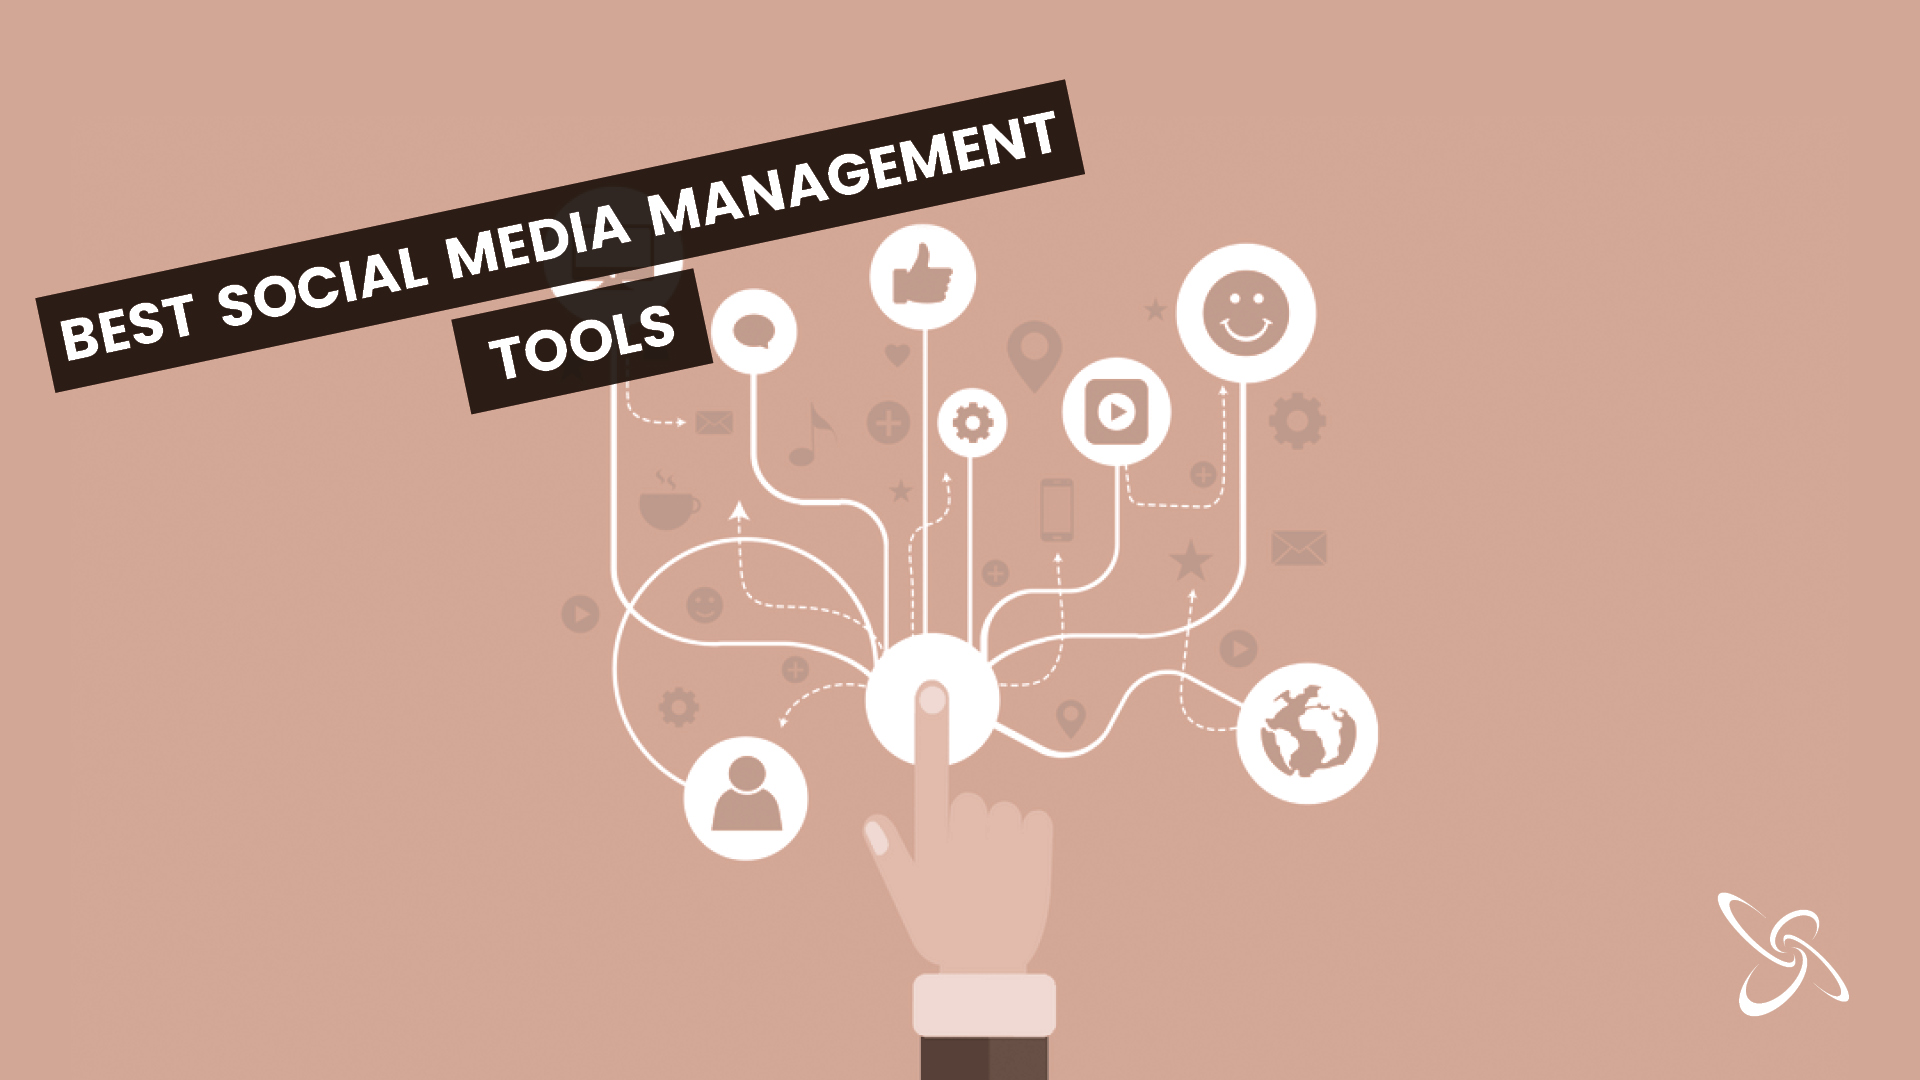 Best social media management tools